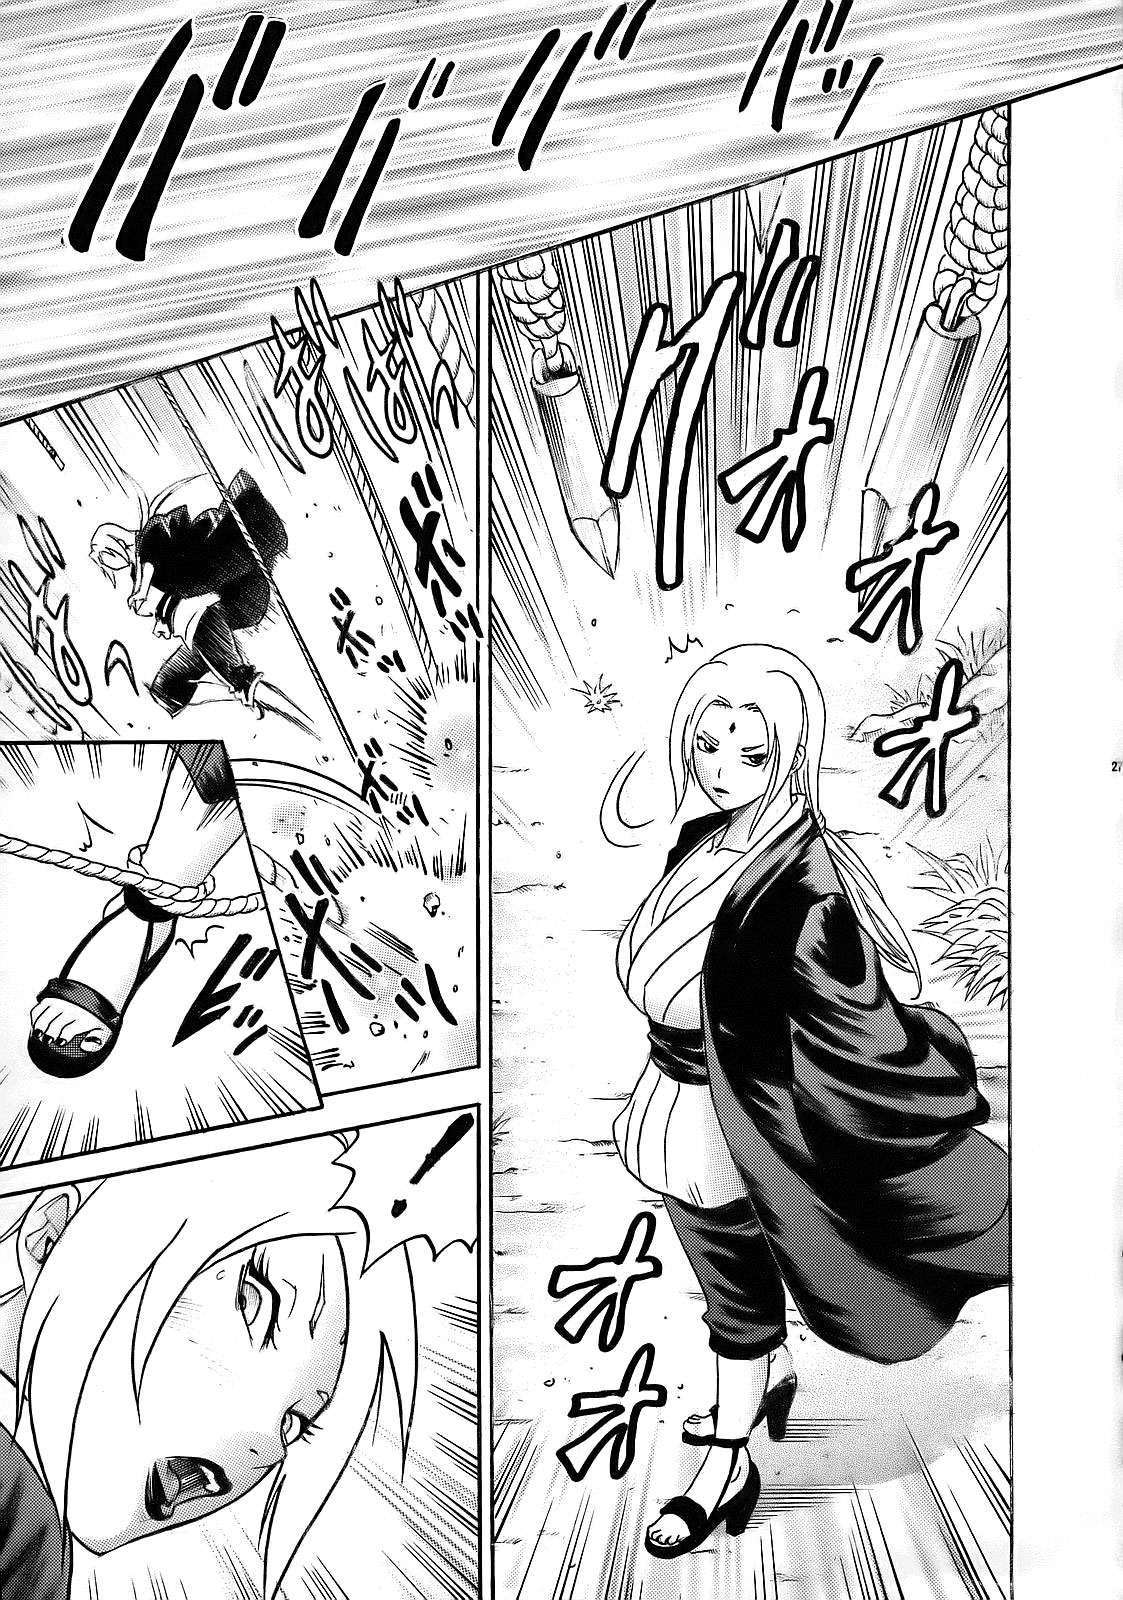 PM 10 - Indecent Ninja Training naruto 27 hentai manga